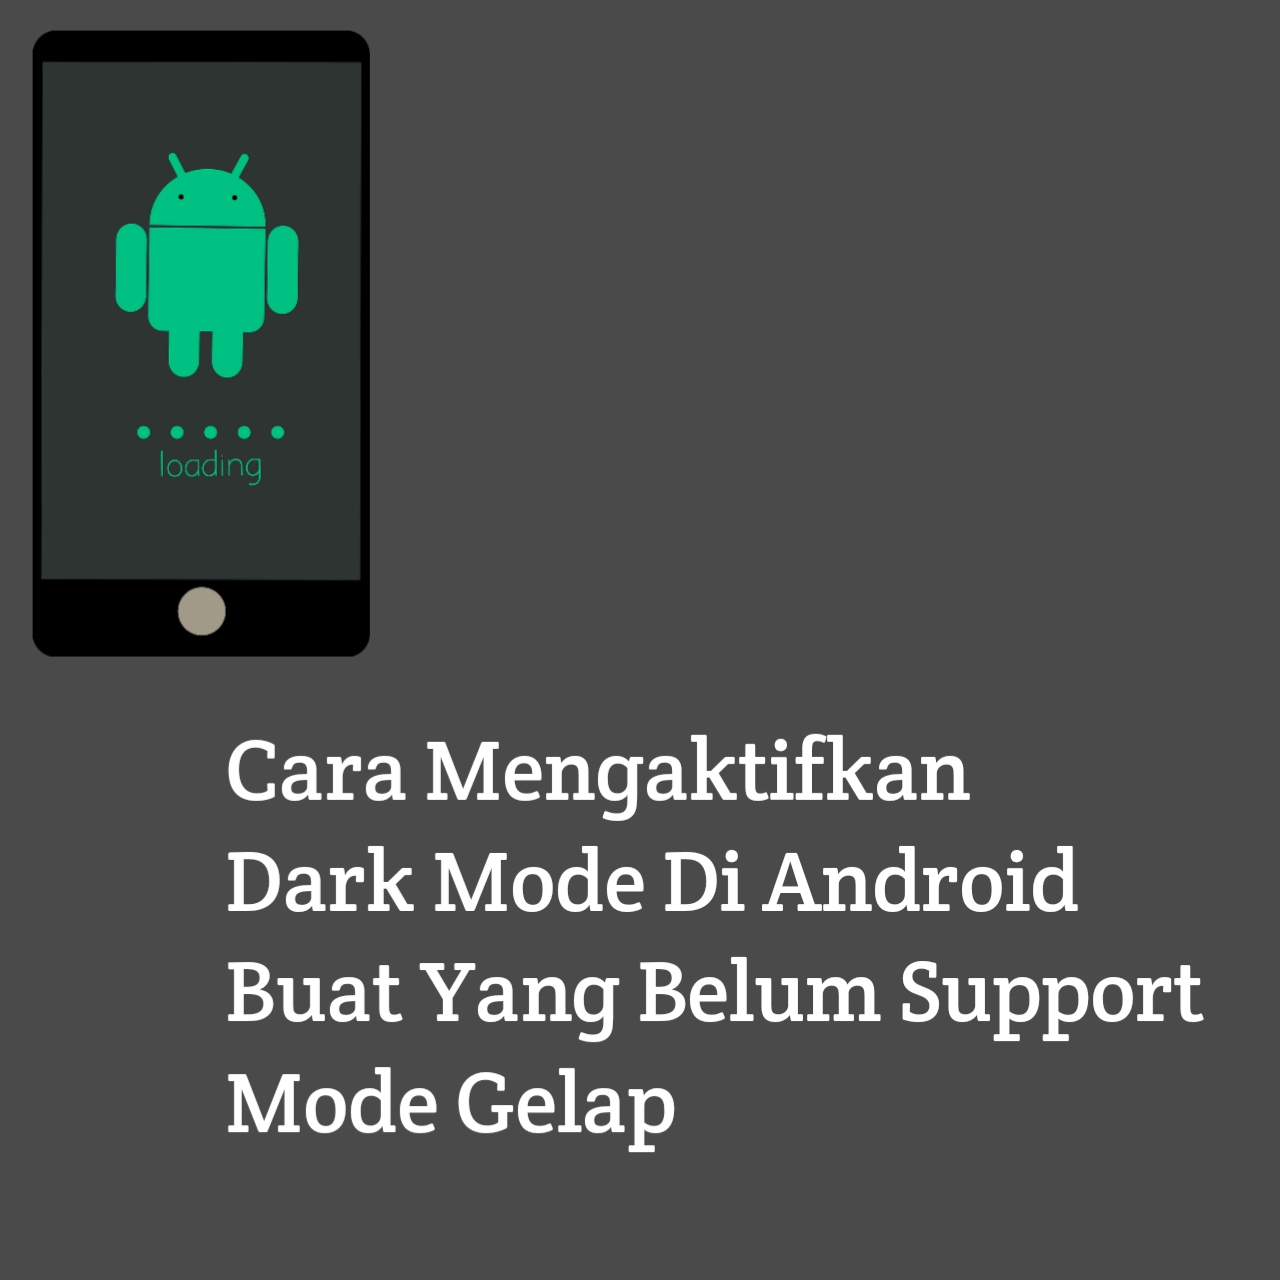 Cara Mengaktifkan Dark Mode Di Android Buat Yang Belum Support Mode Gelap